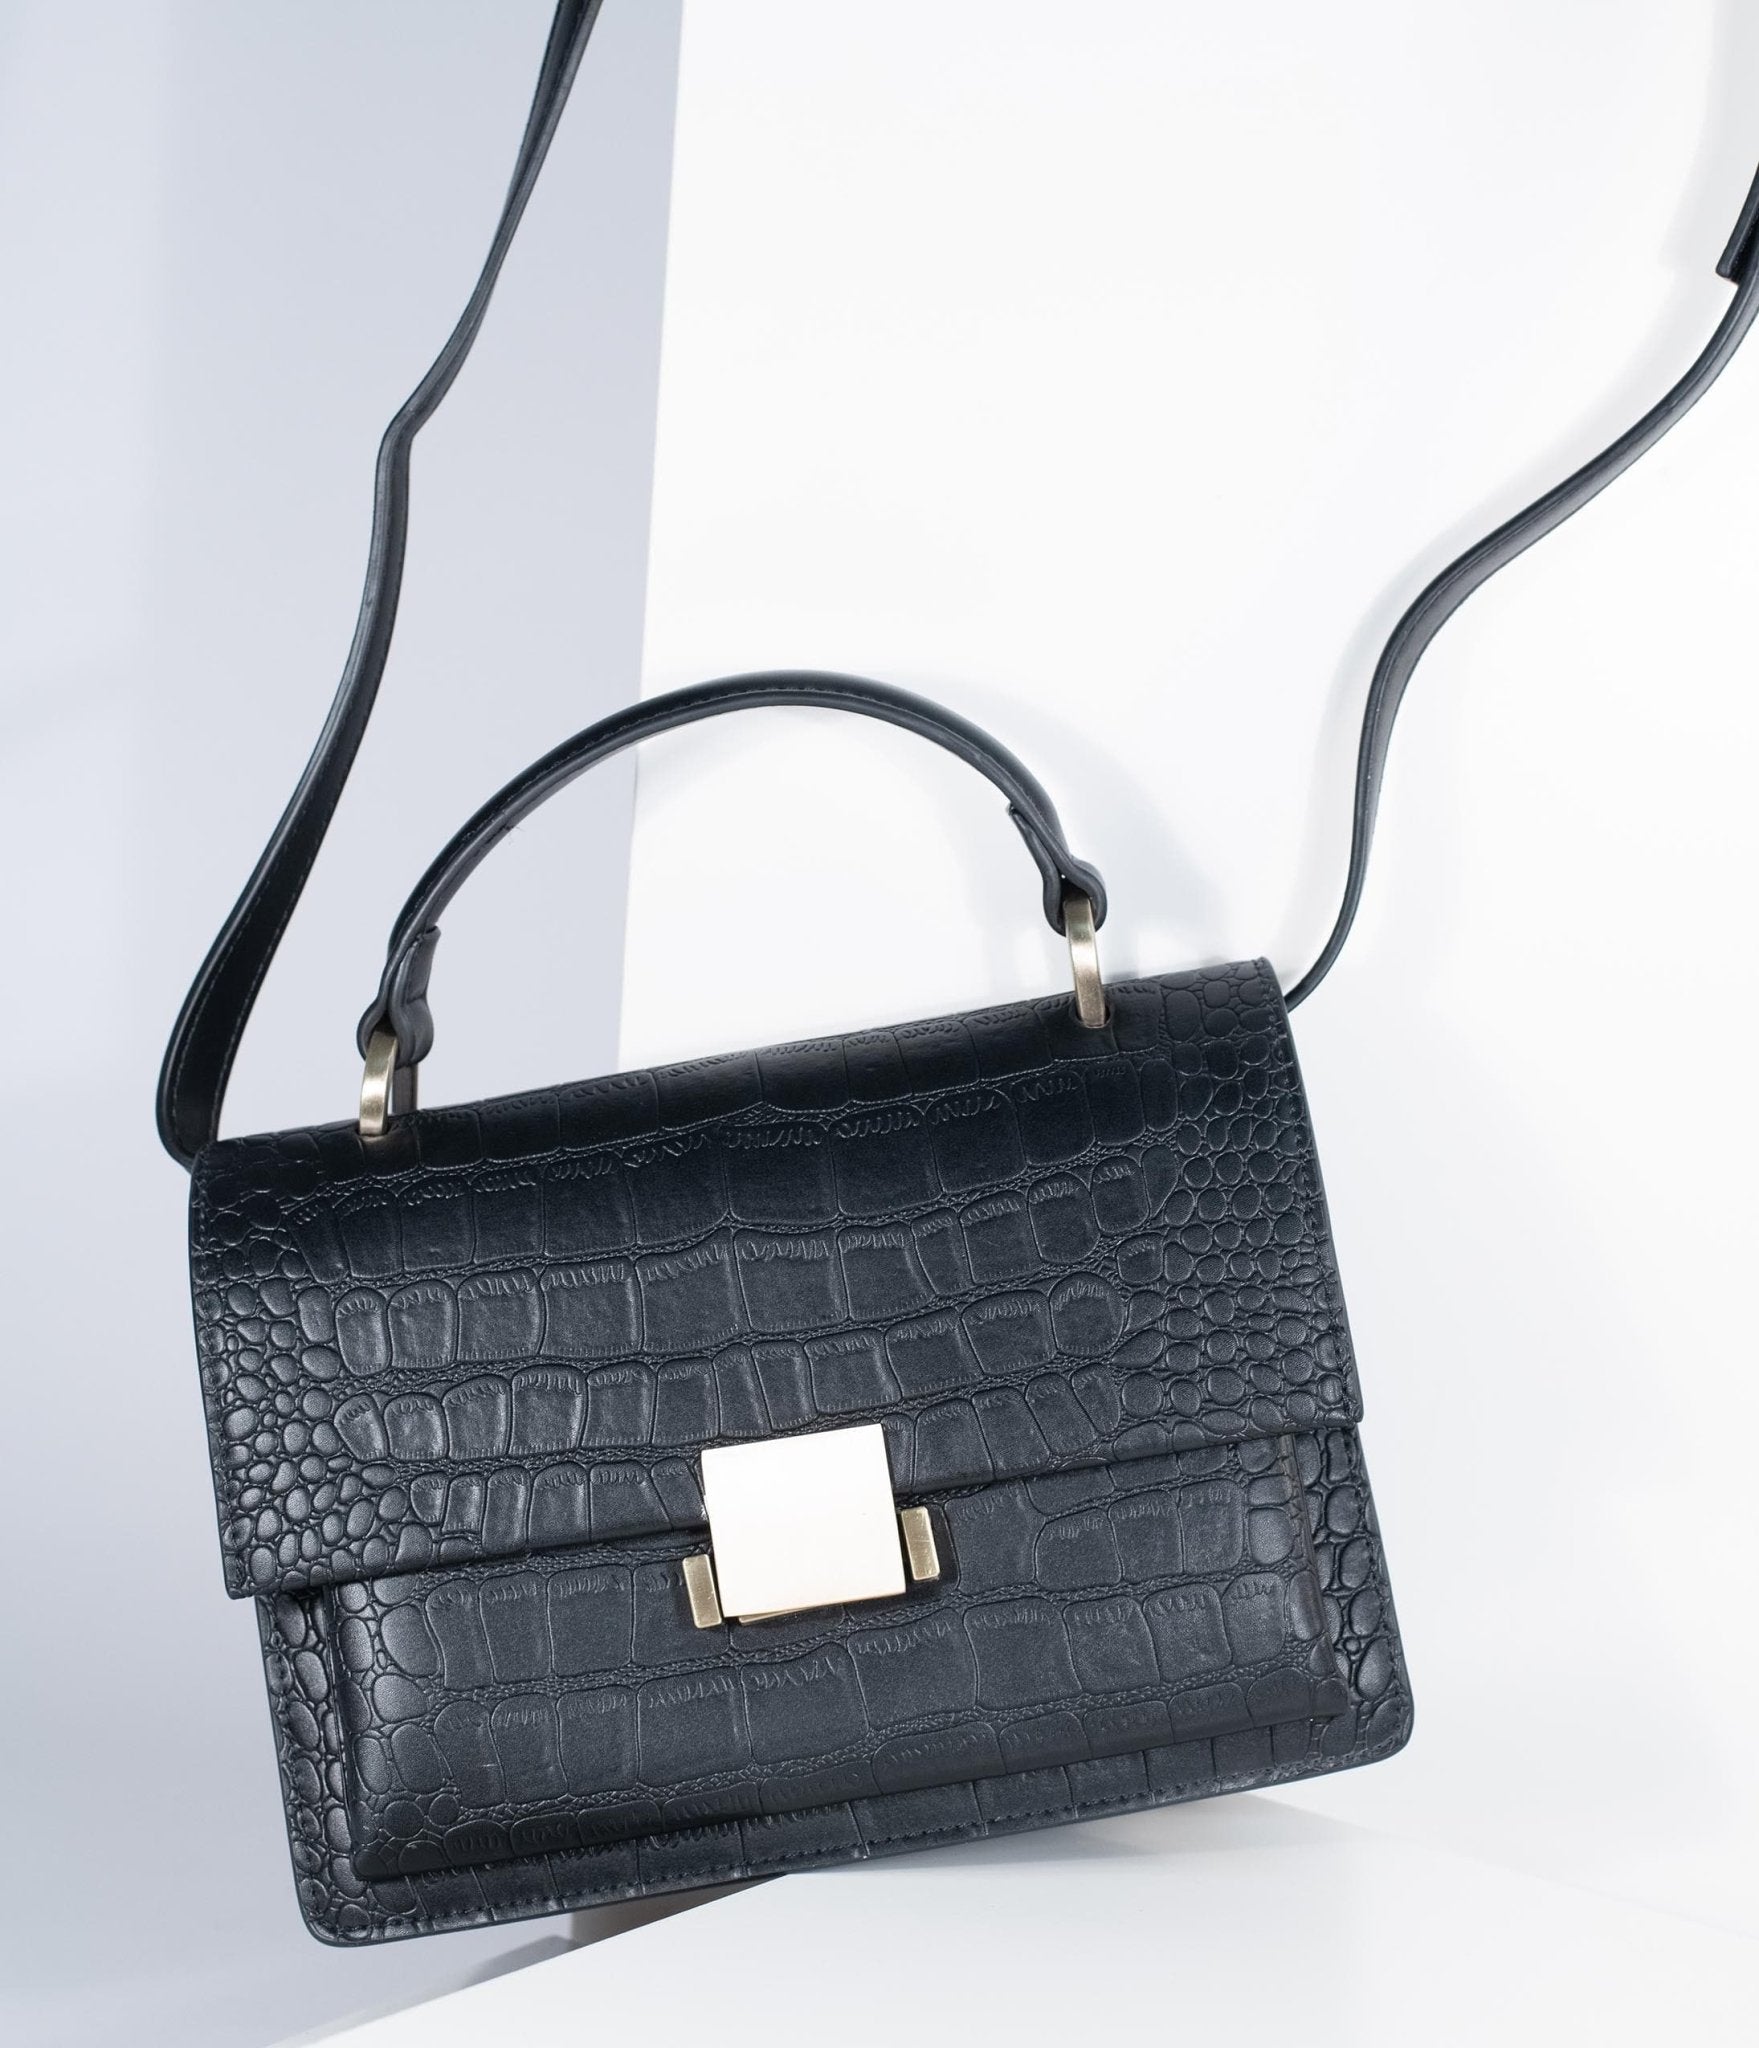 

Black Leatherette Reptile Embossed Handbag